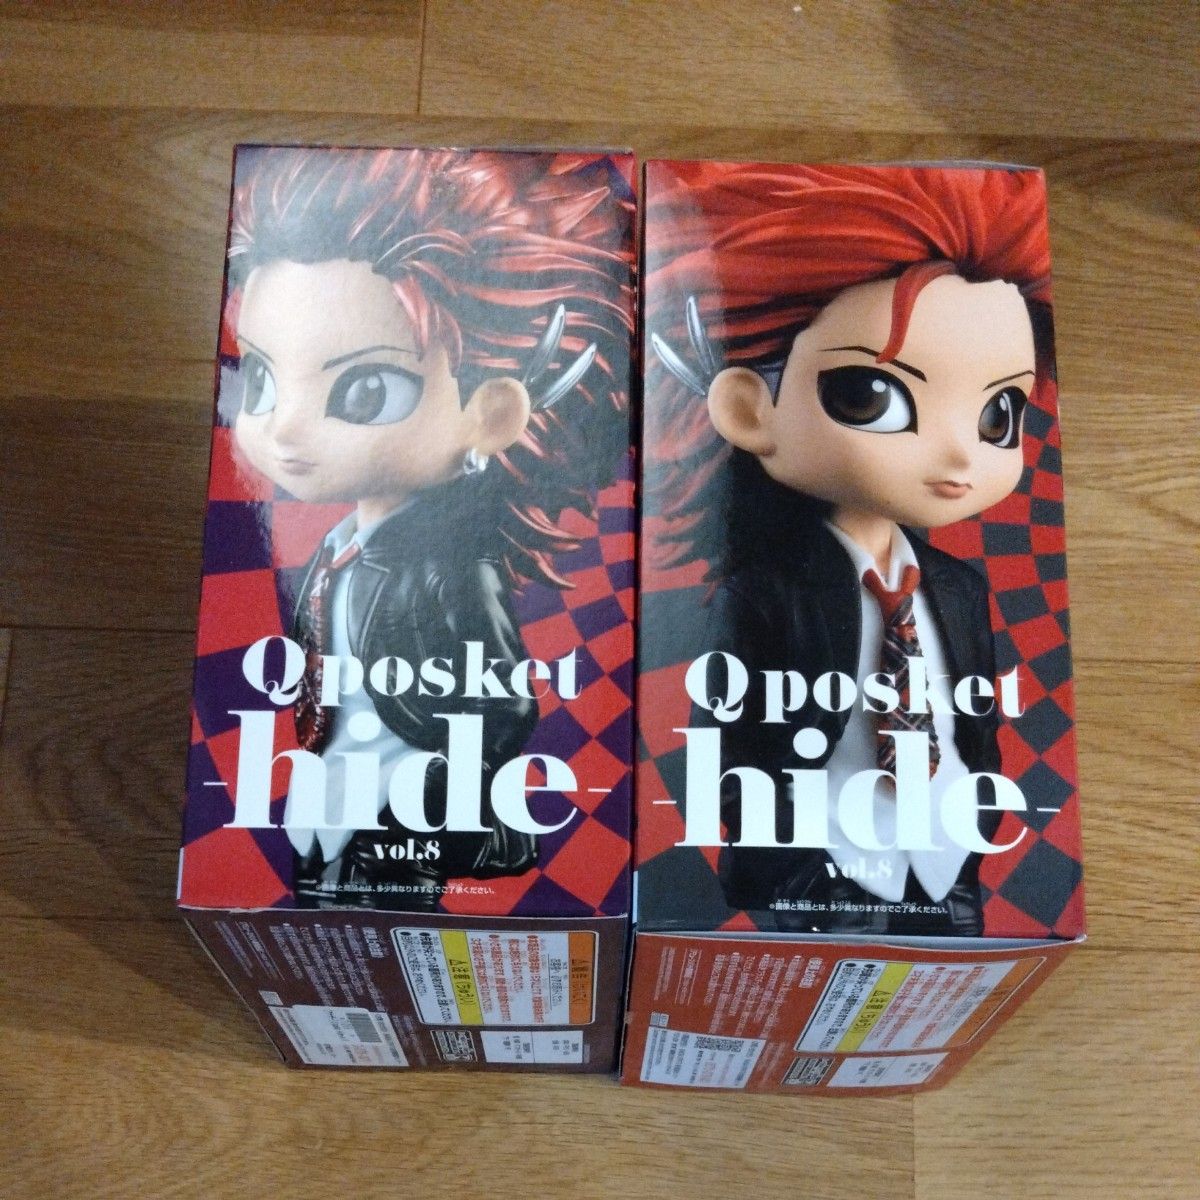 Qposket hide vol.8 ノーマルカラー メタリックカラー 2種 